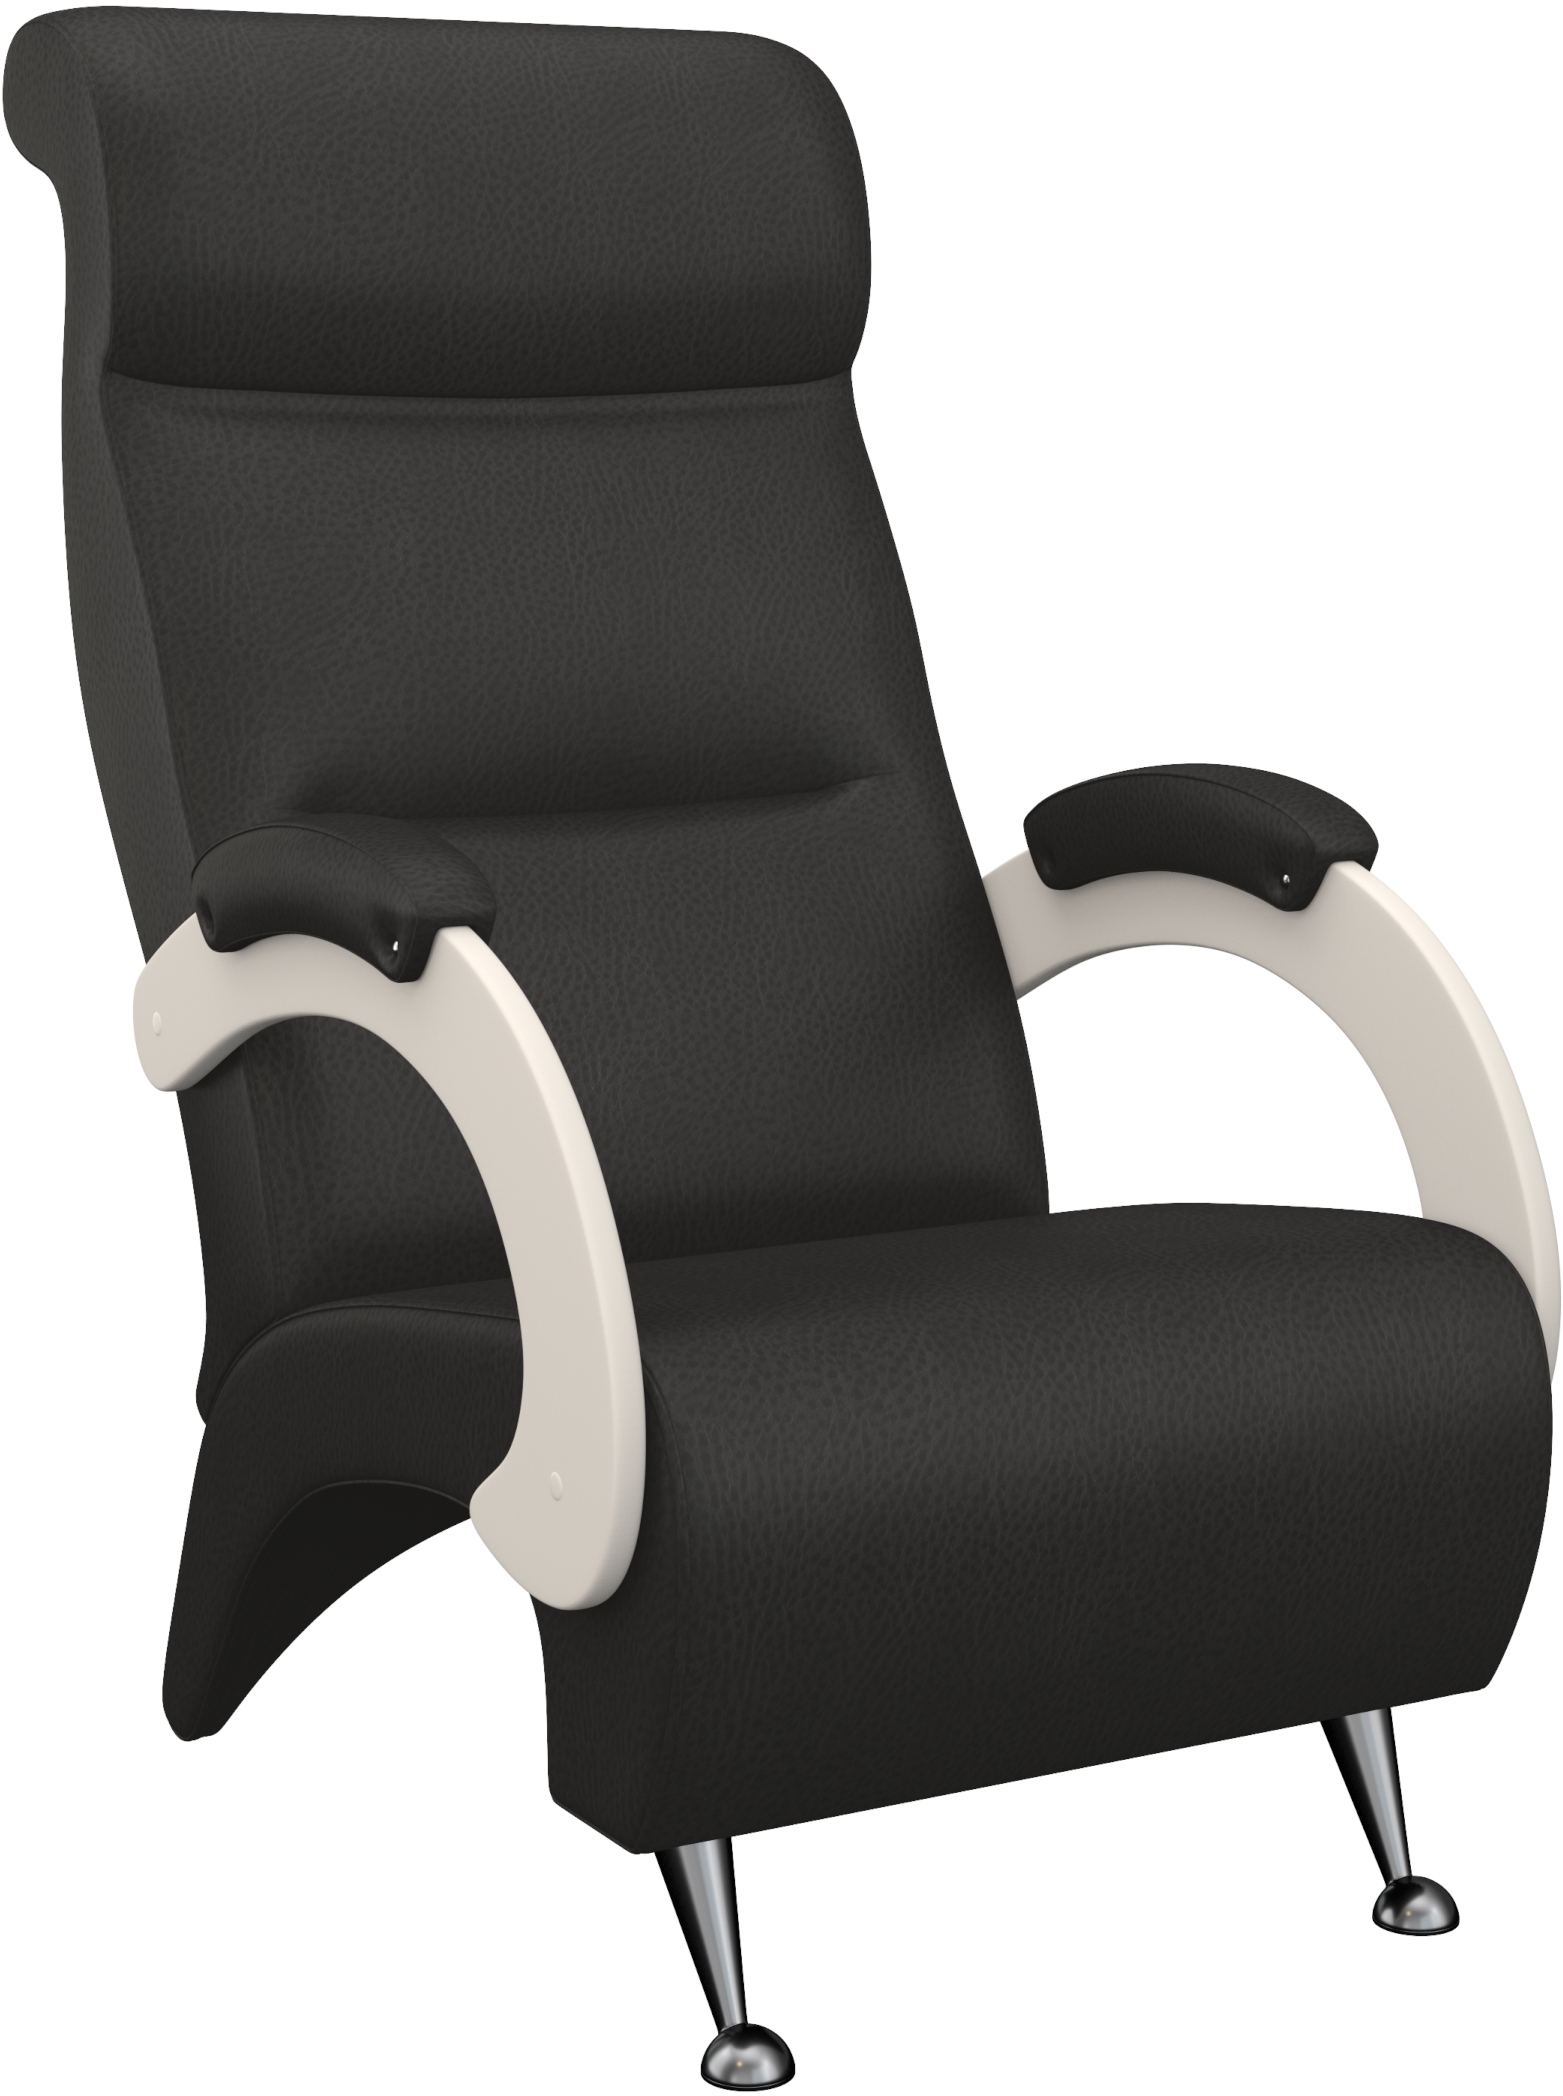 Кресло модель 9Д фото 1